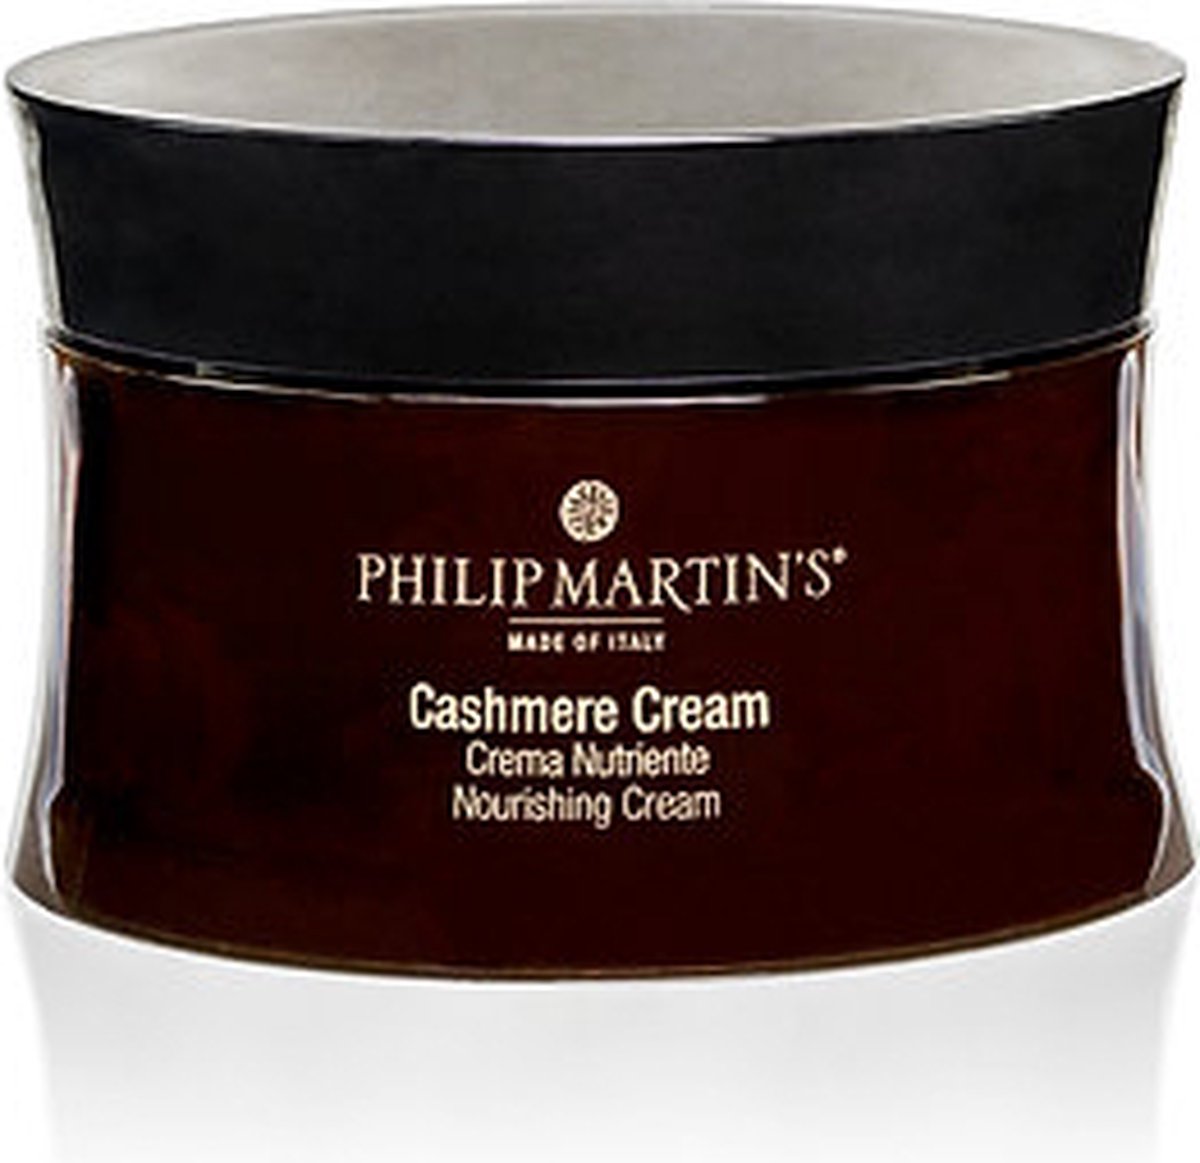 Cashmere Cream - Philip Martin's - Bodycare